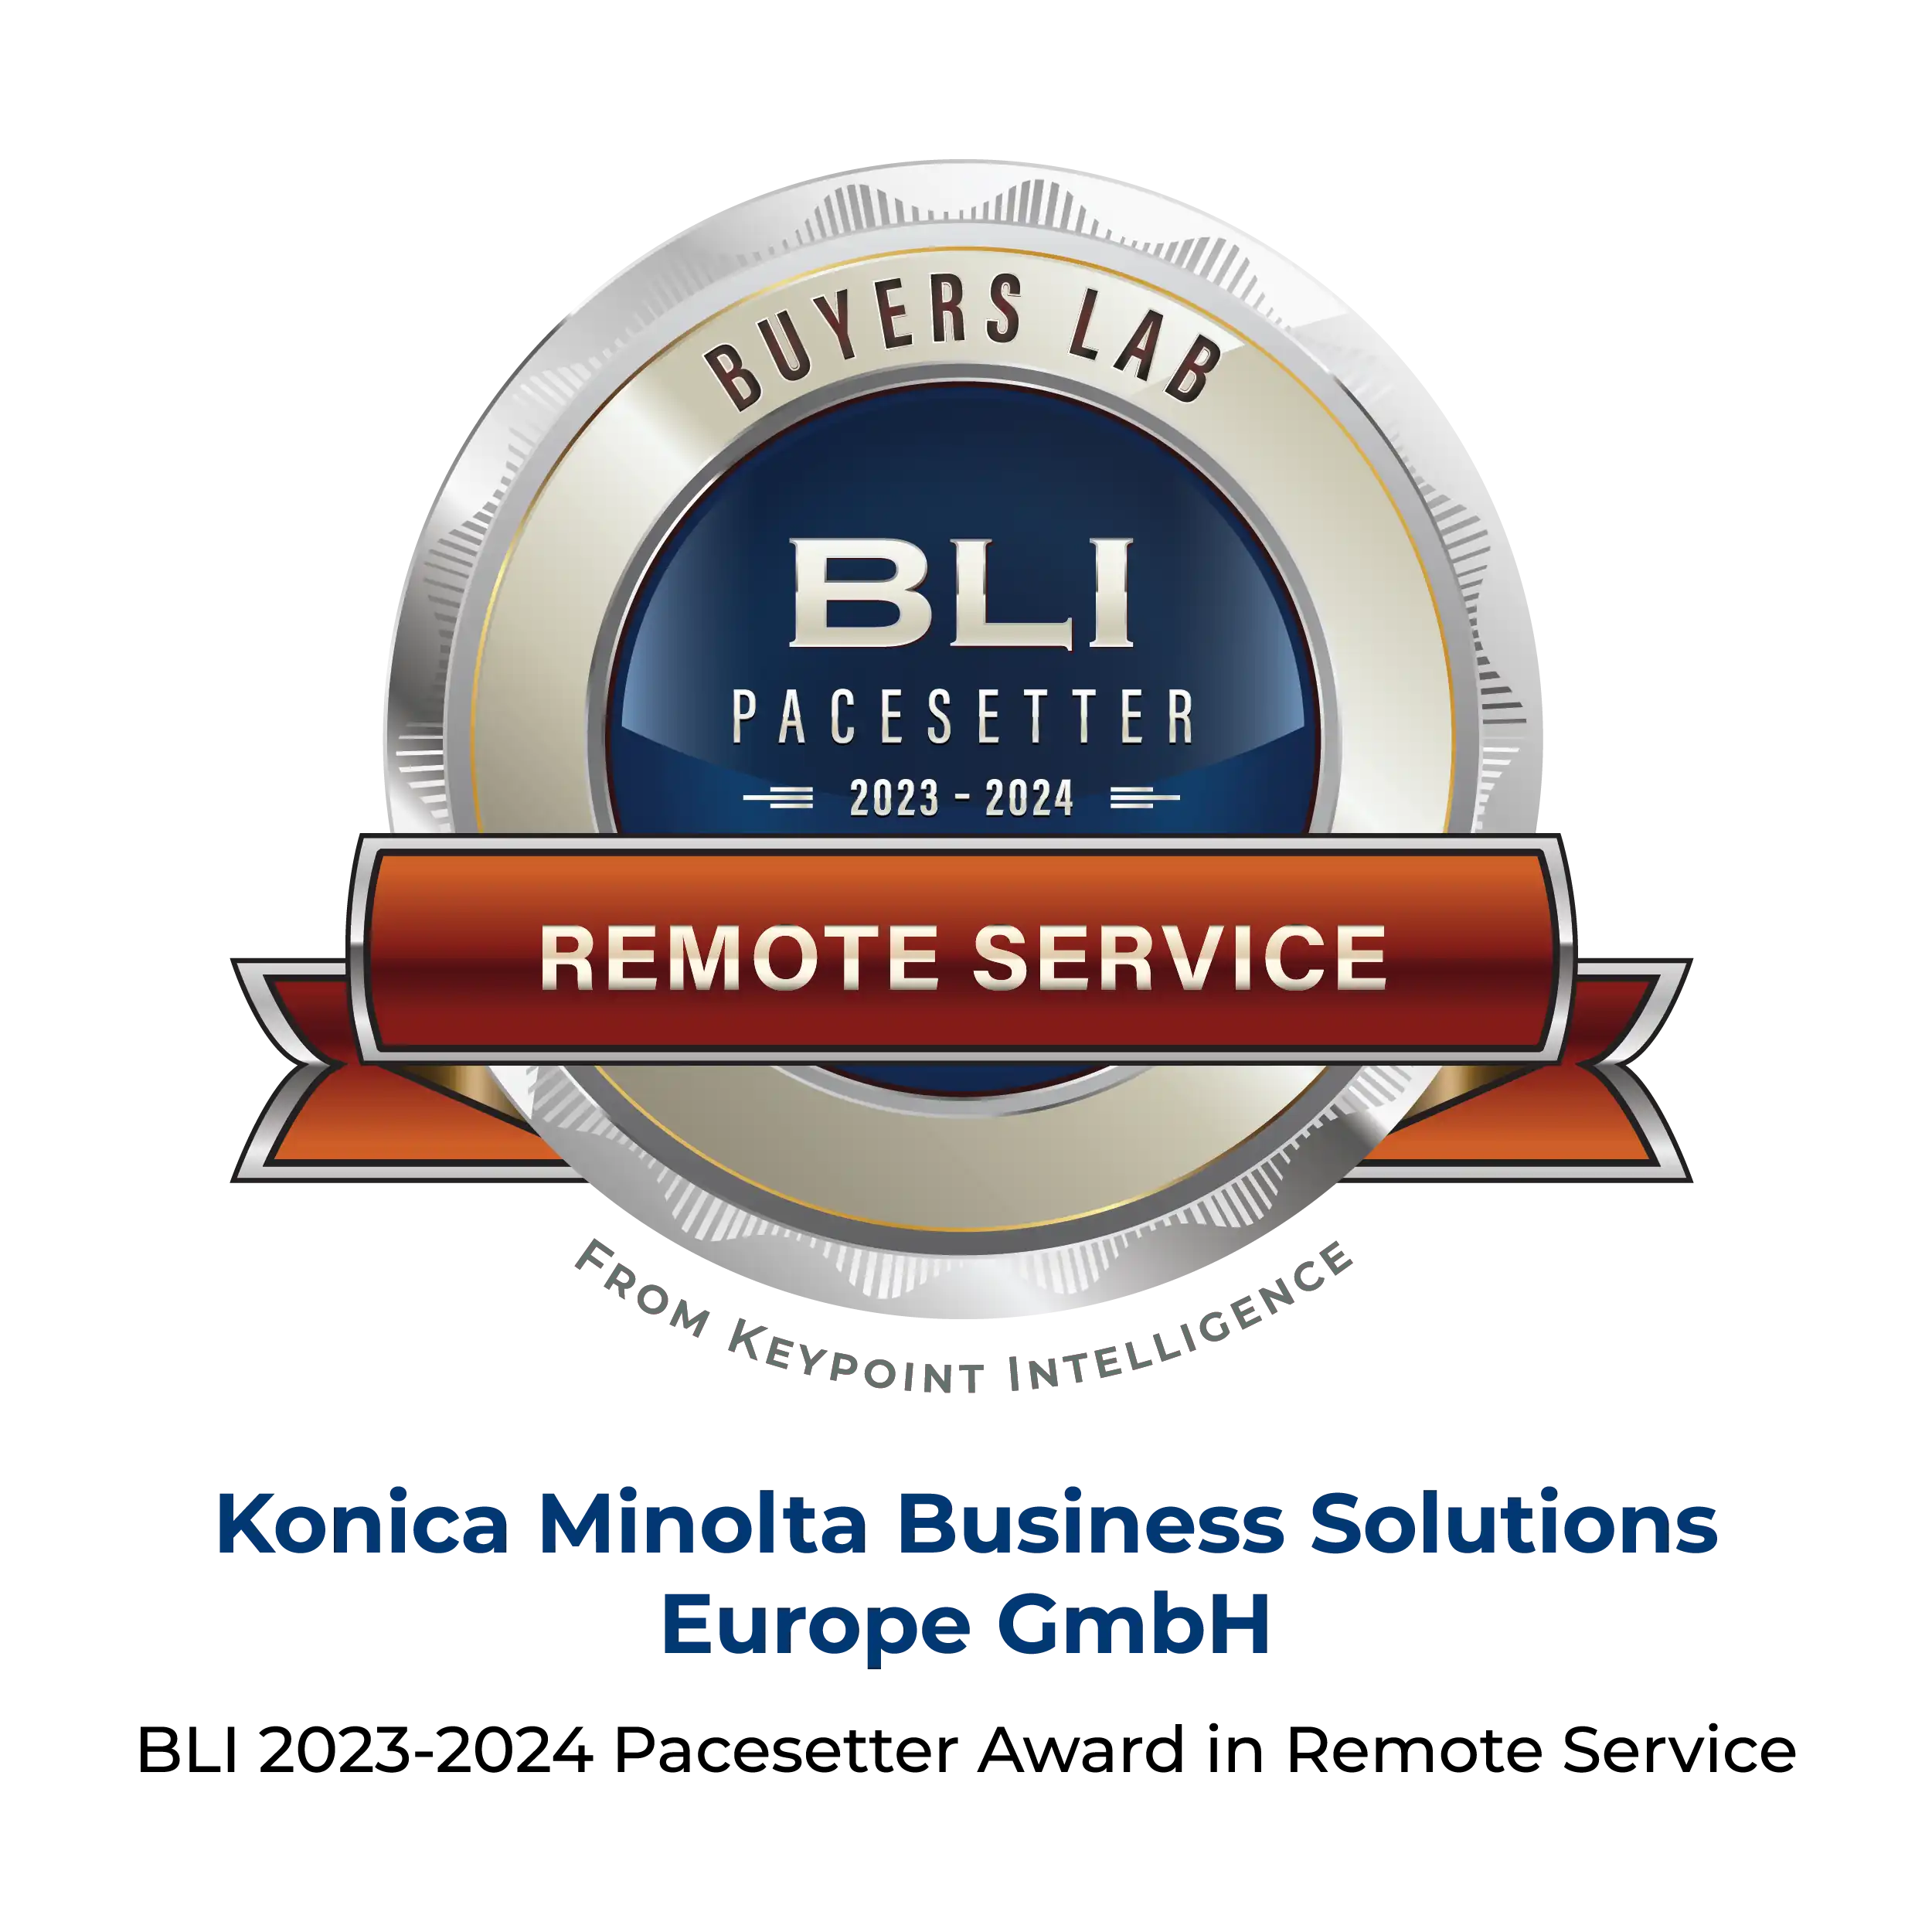 BLI Remote Services Award 2022